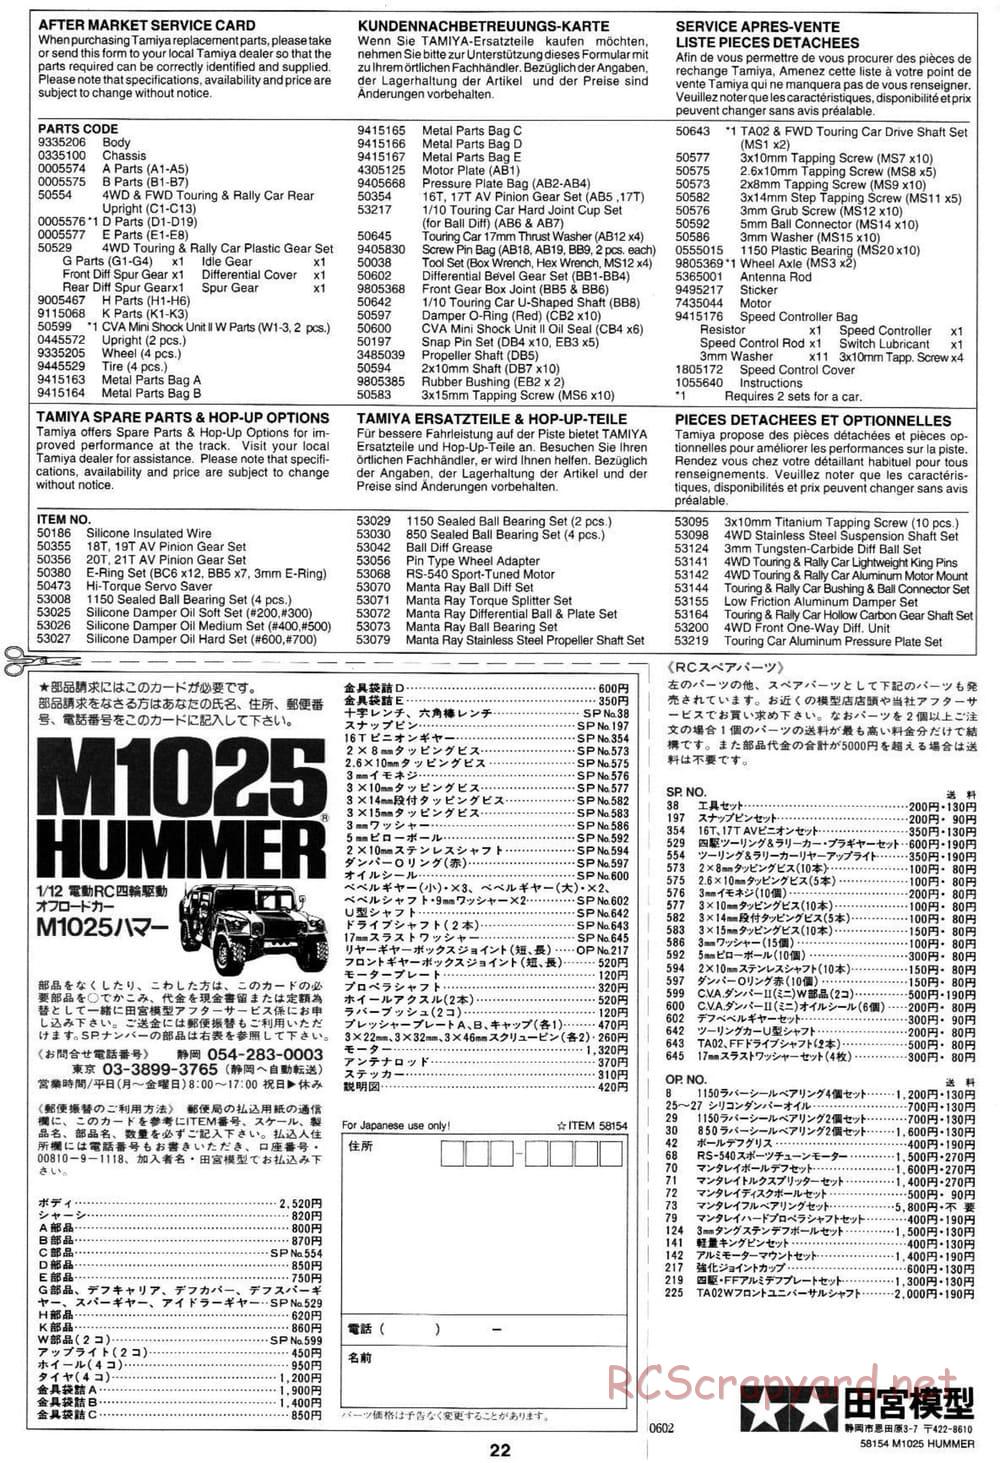 Tamiya - M1025 Hummer - TA-01 Chassis - Manual - Page 22